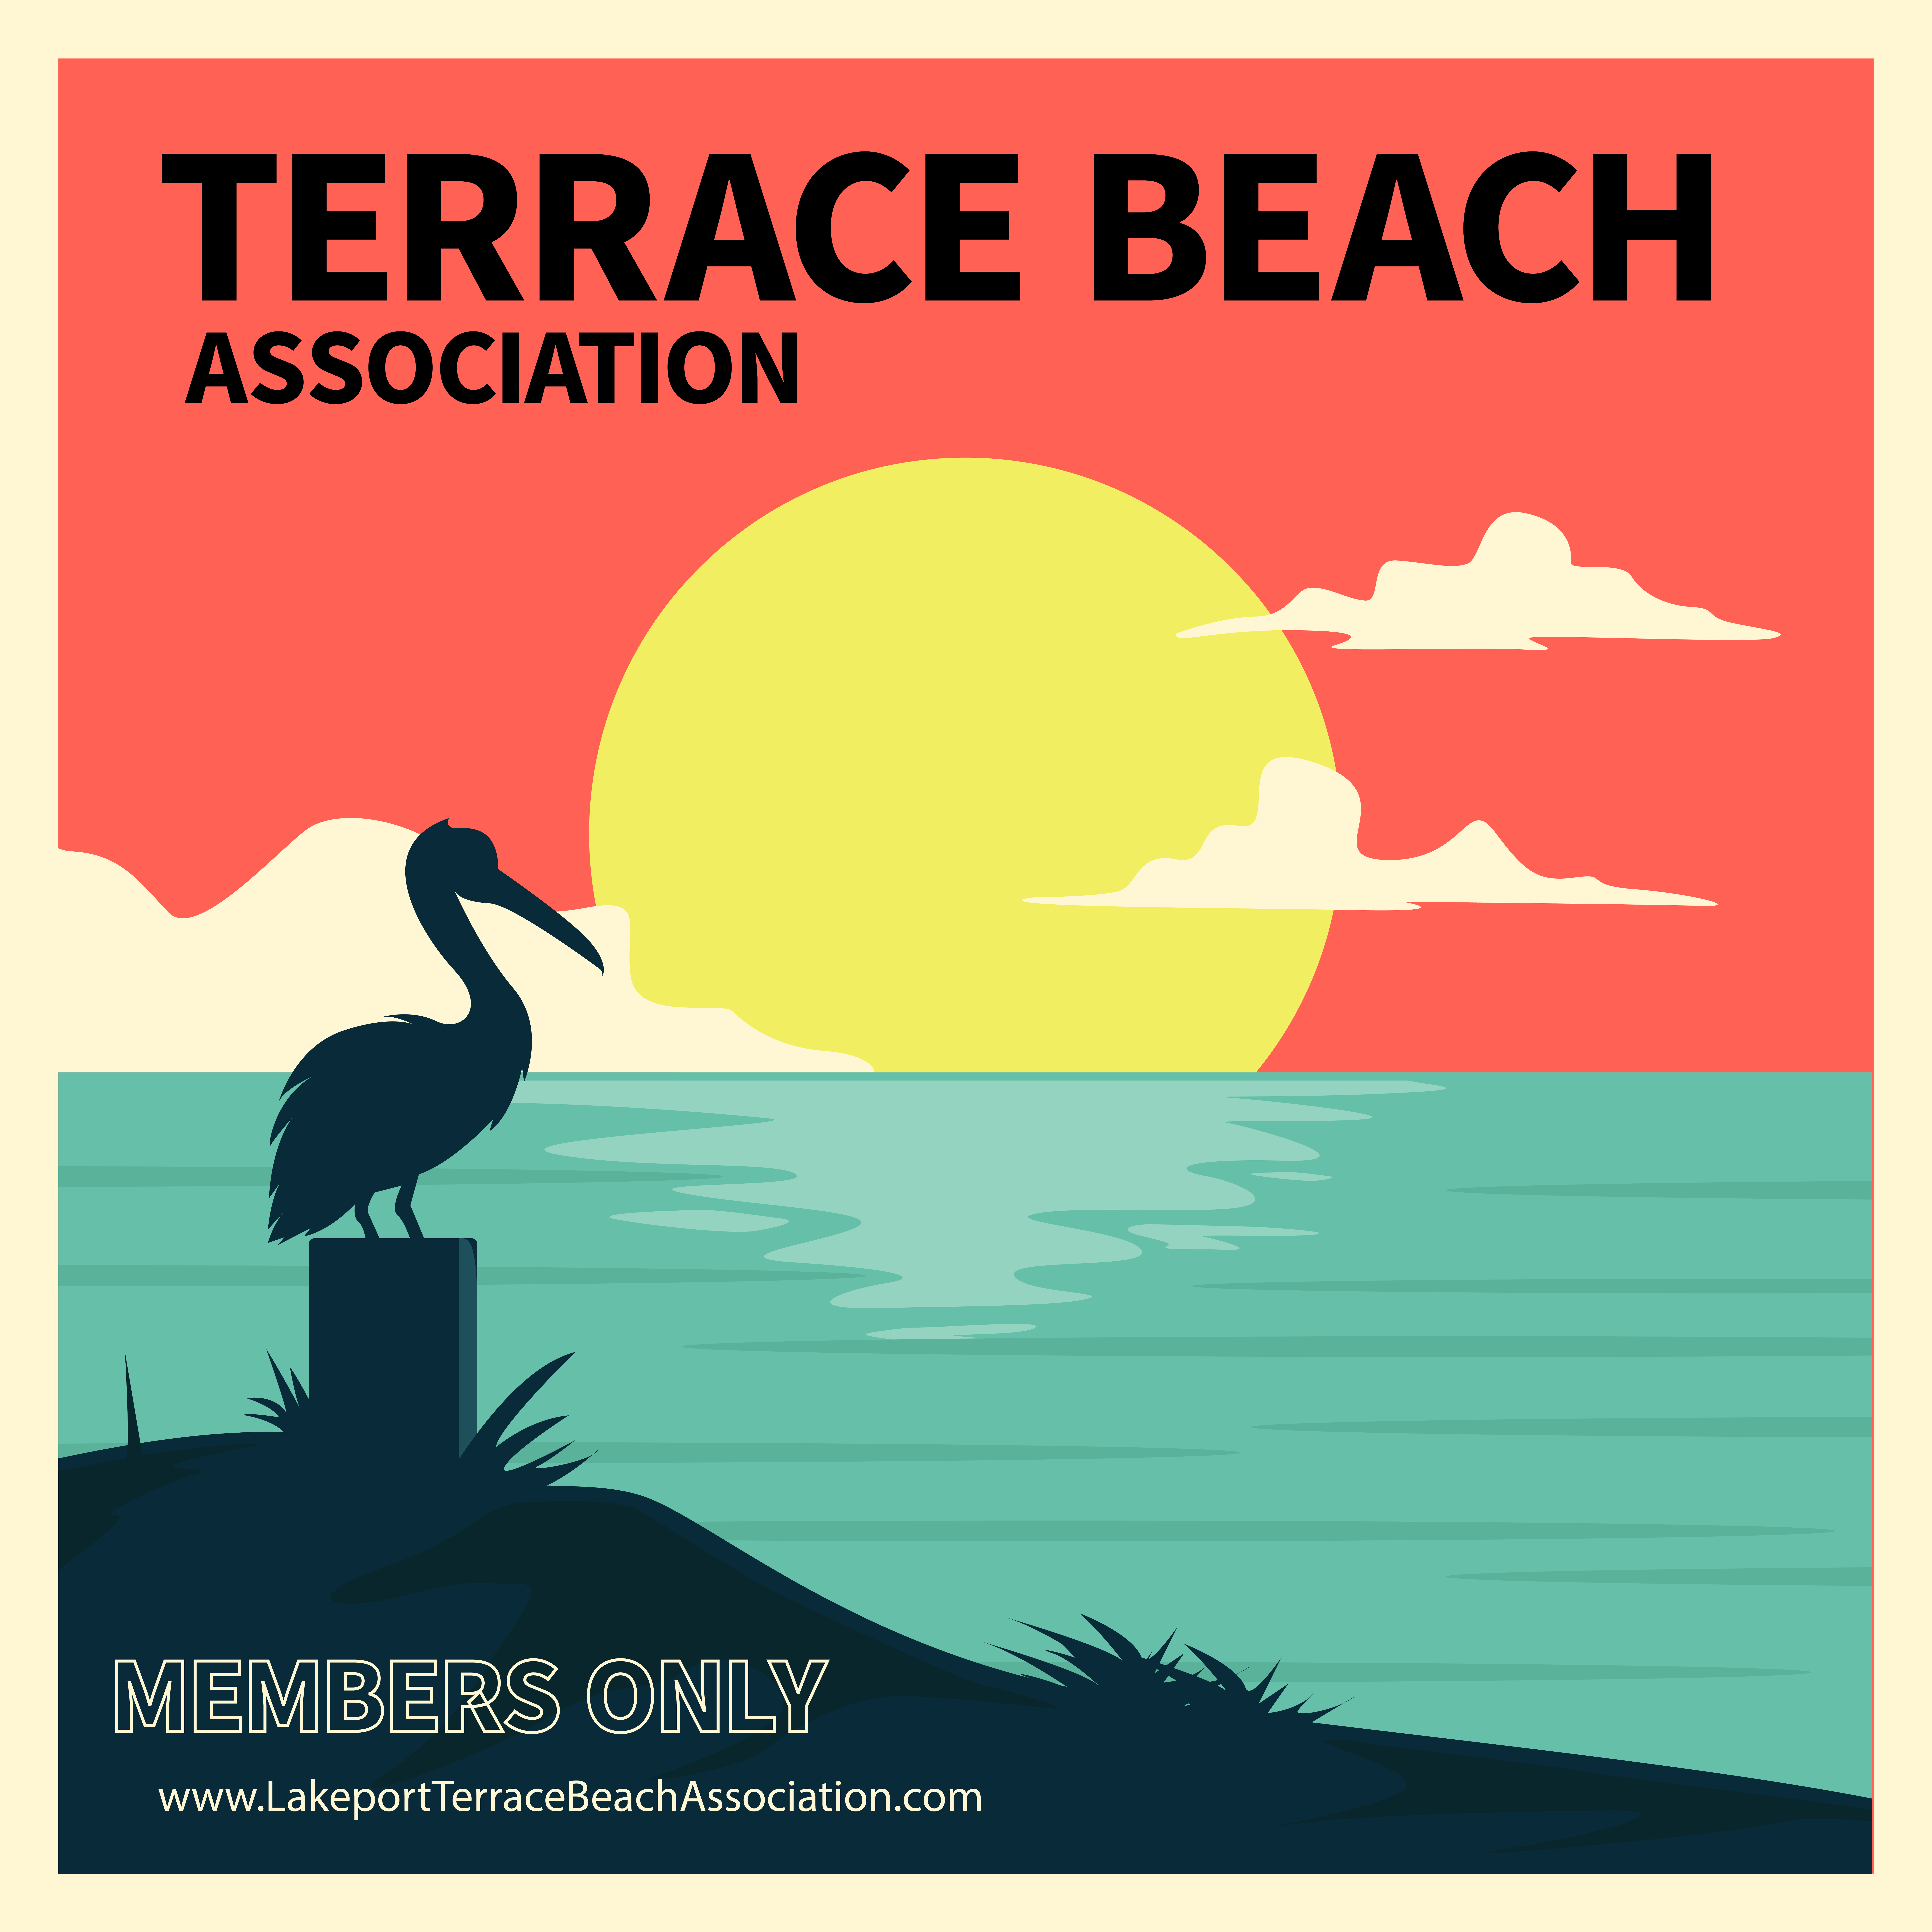 Terrace Beach Association